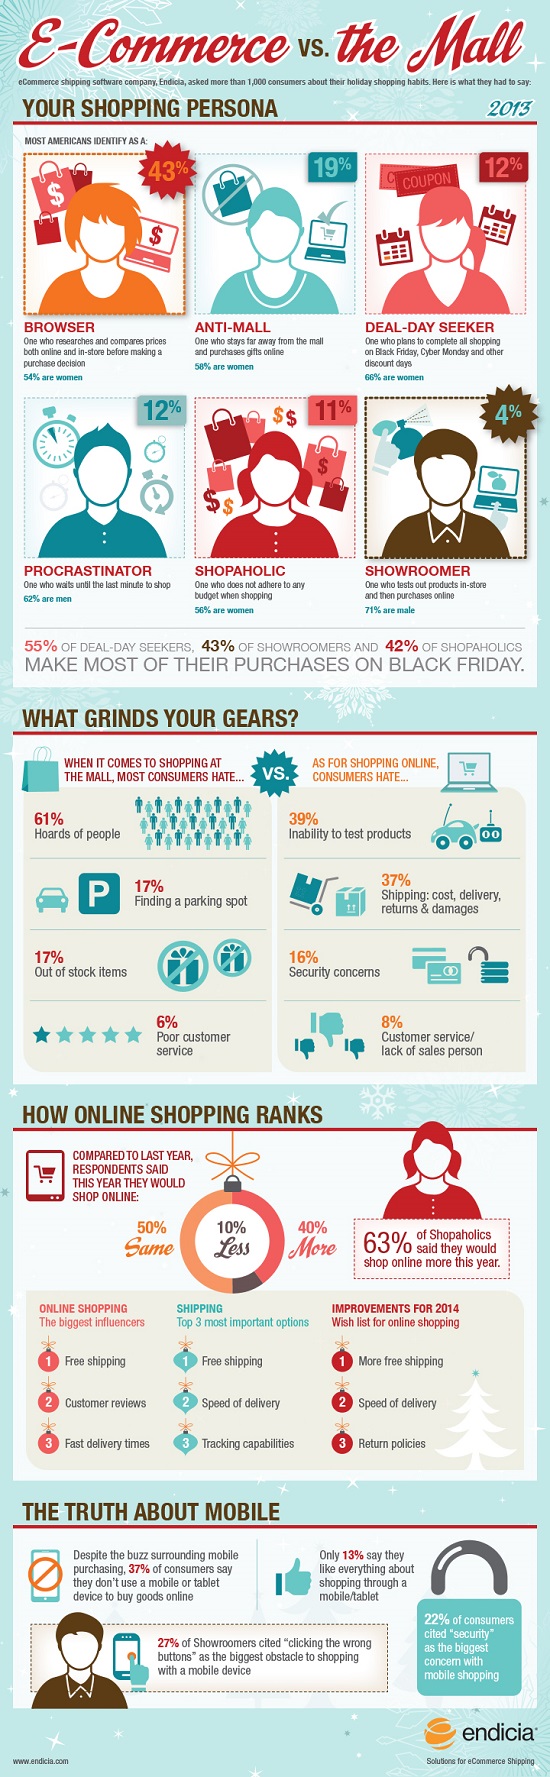 Endicia_shopping_infographic_110713